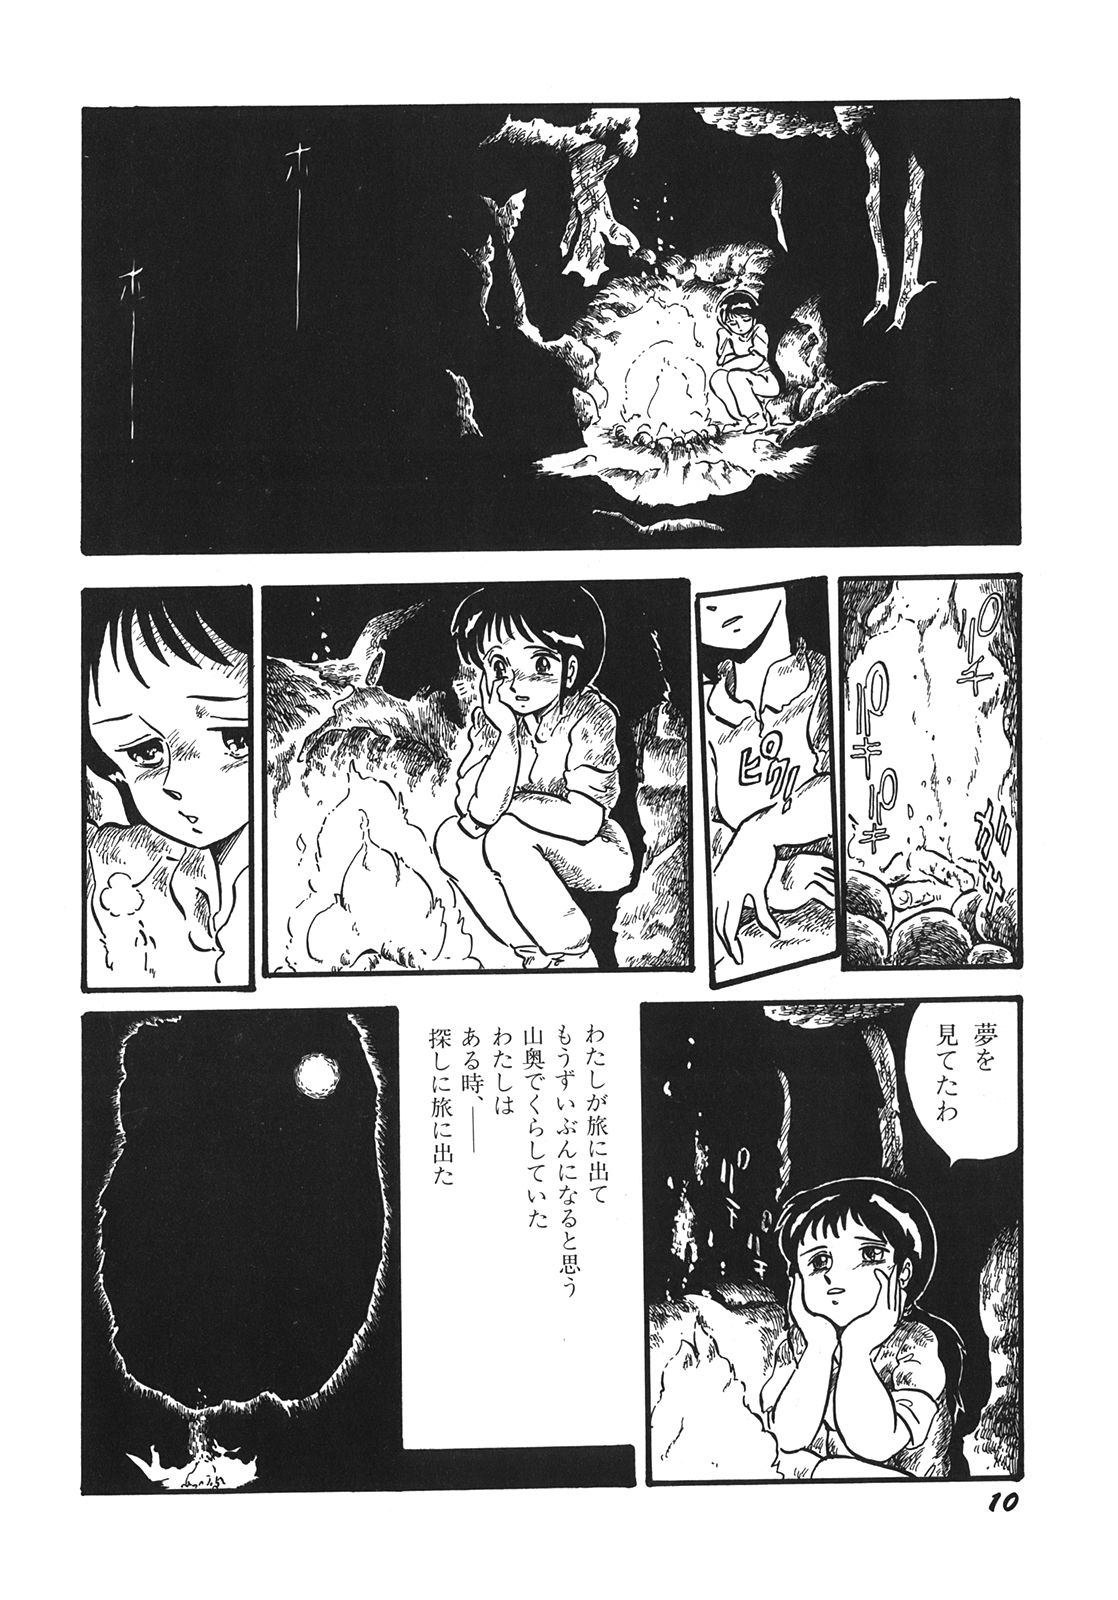 [Shinda Mane] RAKE [1996-03-25] [新田真子] RAKE [1996-03-25]